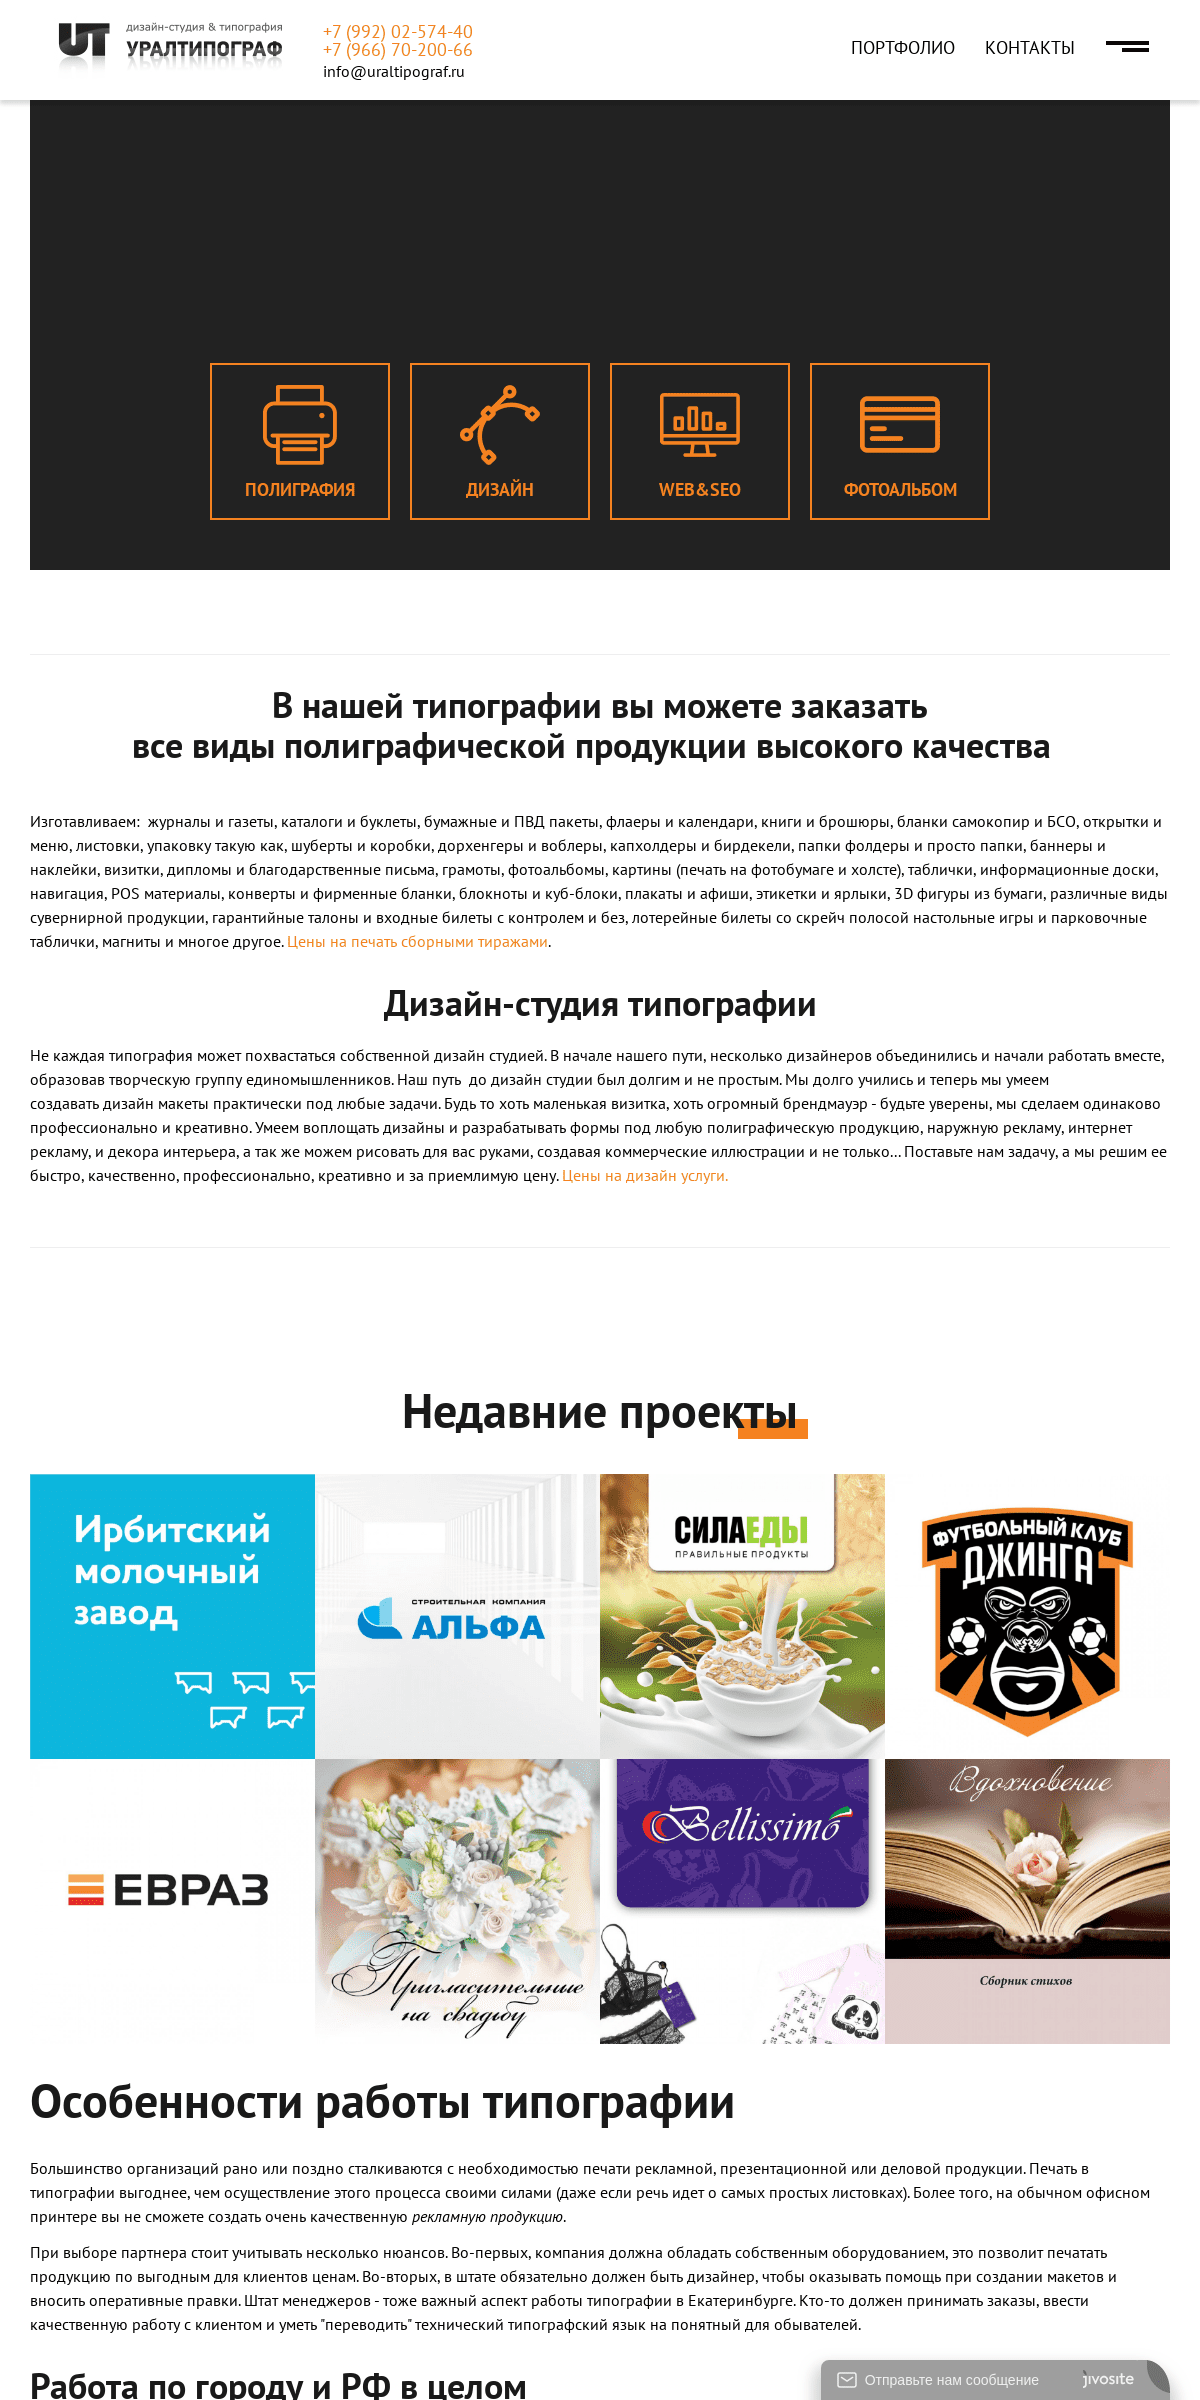 A complete backup of uraltipograf.ru